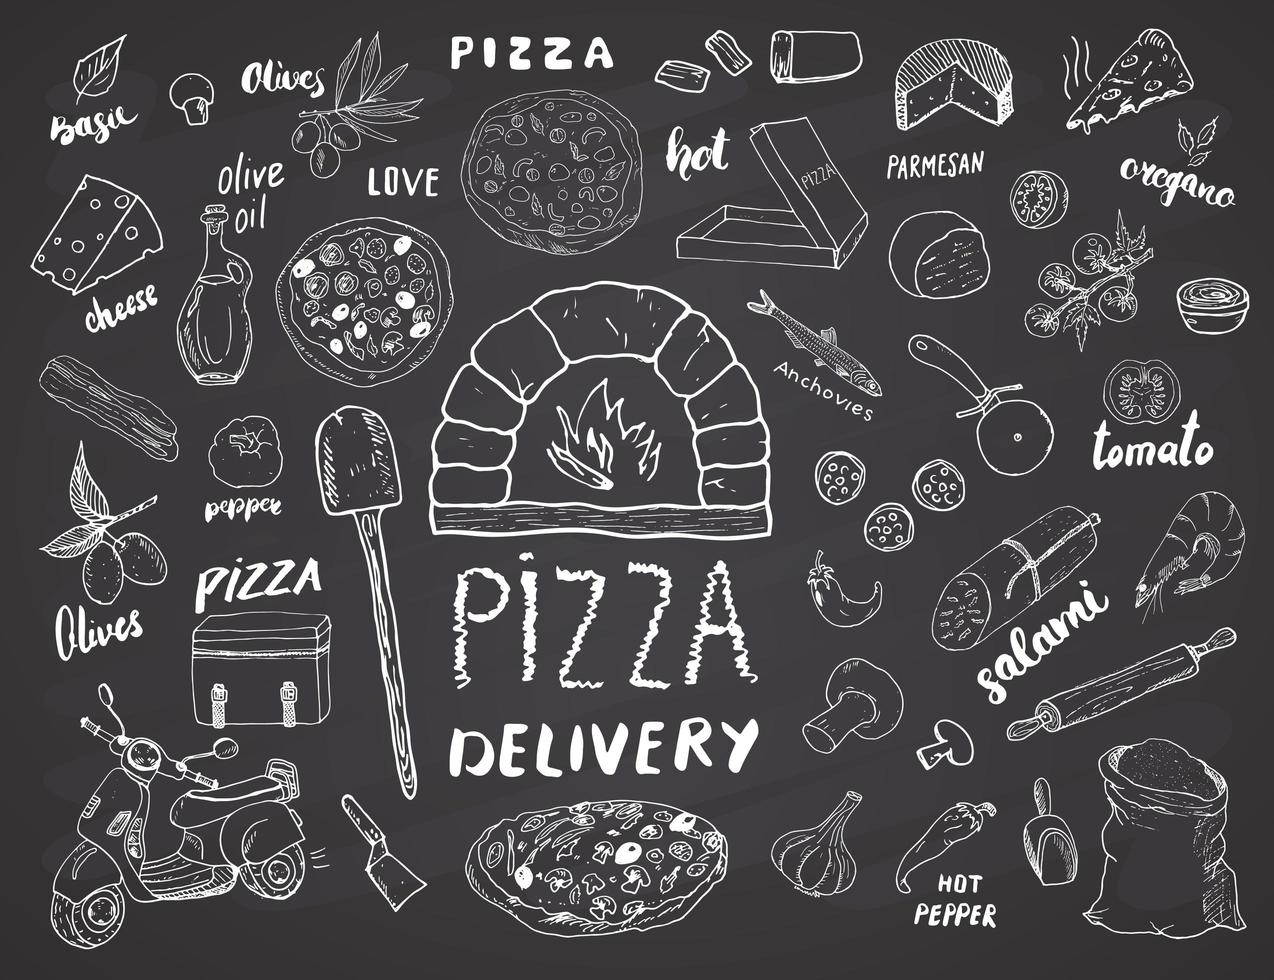 pizza meny handritad skiss set. pizza förberedelse och leverans klotter med mjöl och andra livsmedelsingredienser, ugn och köksredskap, skoter, pizzalåda formgivningsmall. vektor illustration